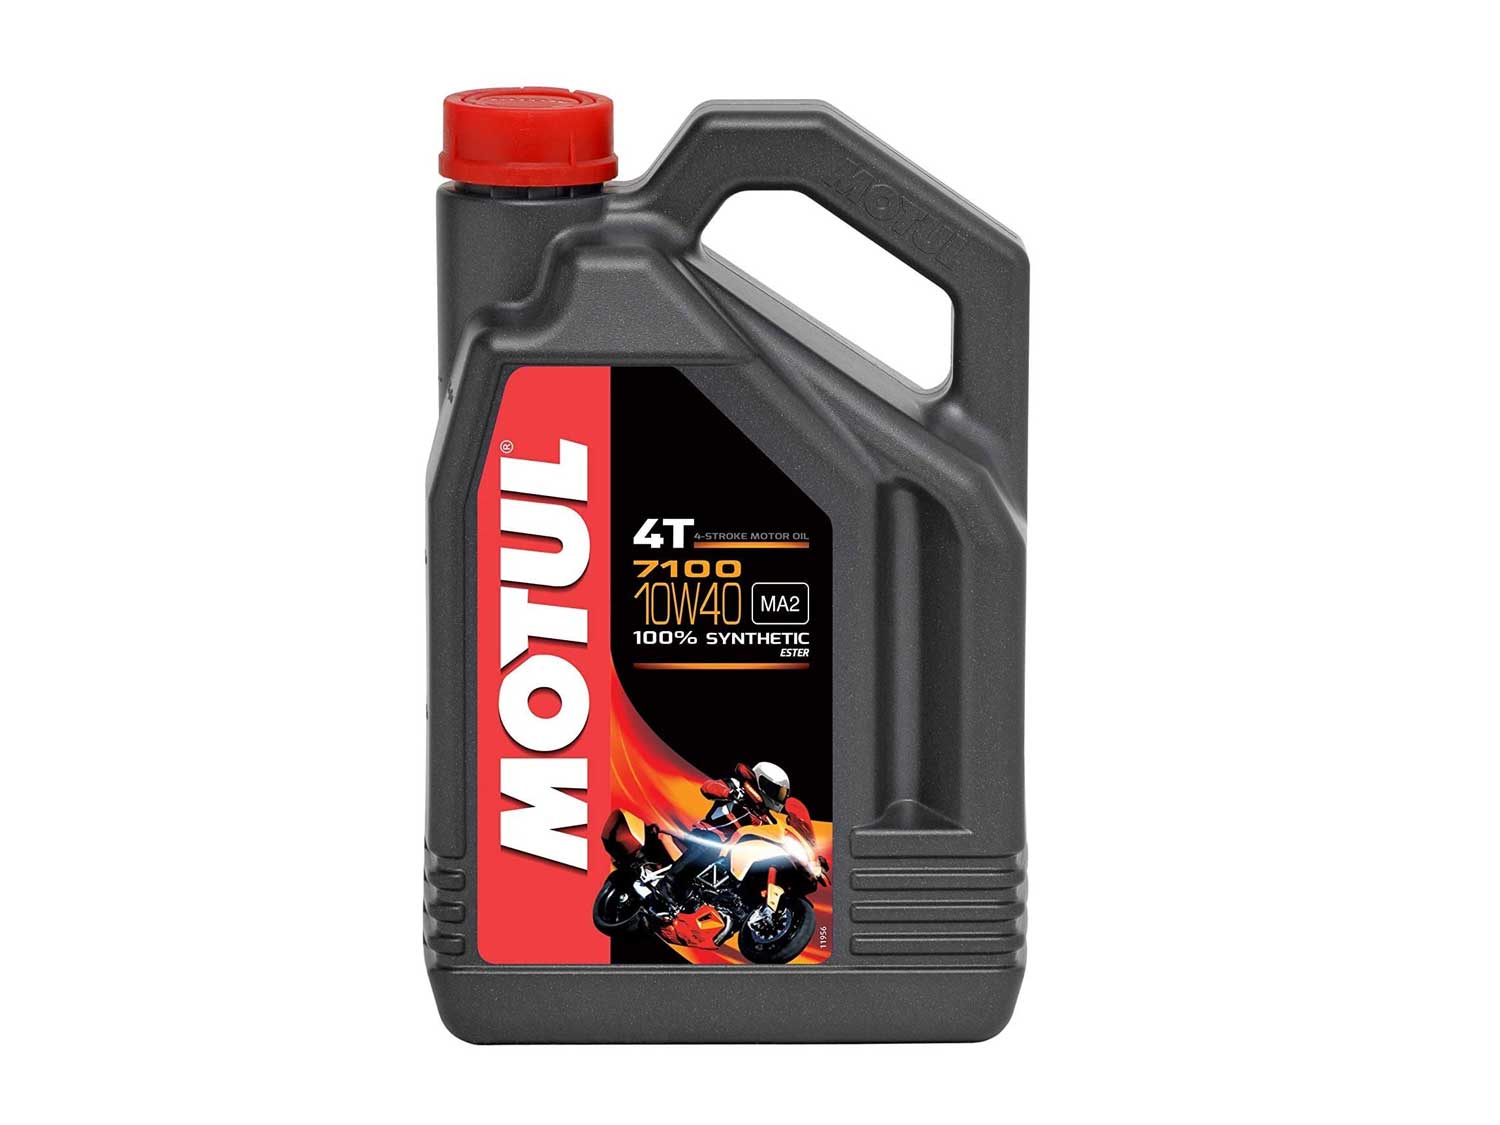 Motul 104092 Synthetic Engine Oil